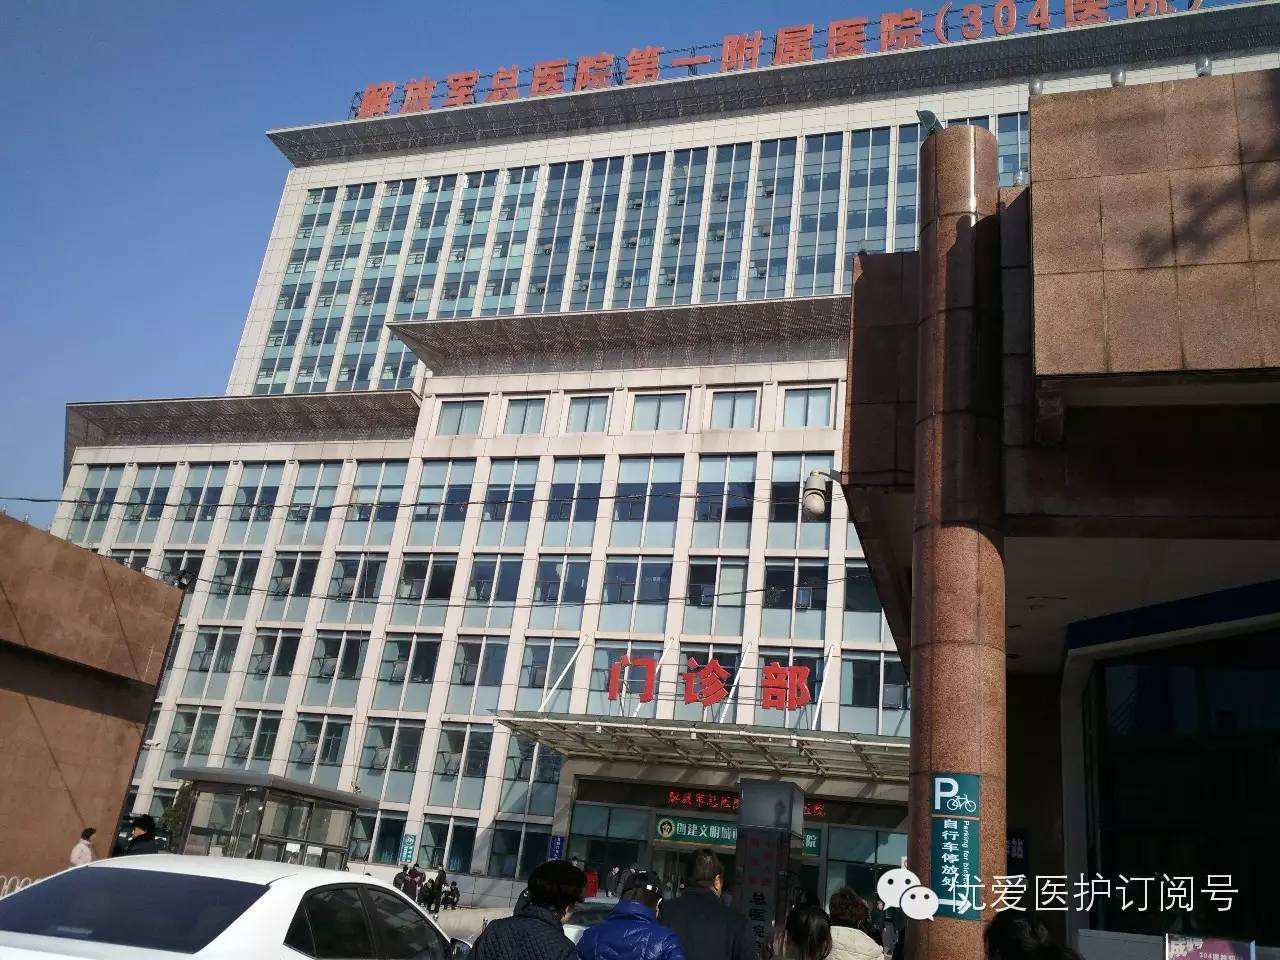 北京304医院电话服务台电话-北京304医院电话服务台电话号码